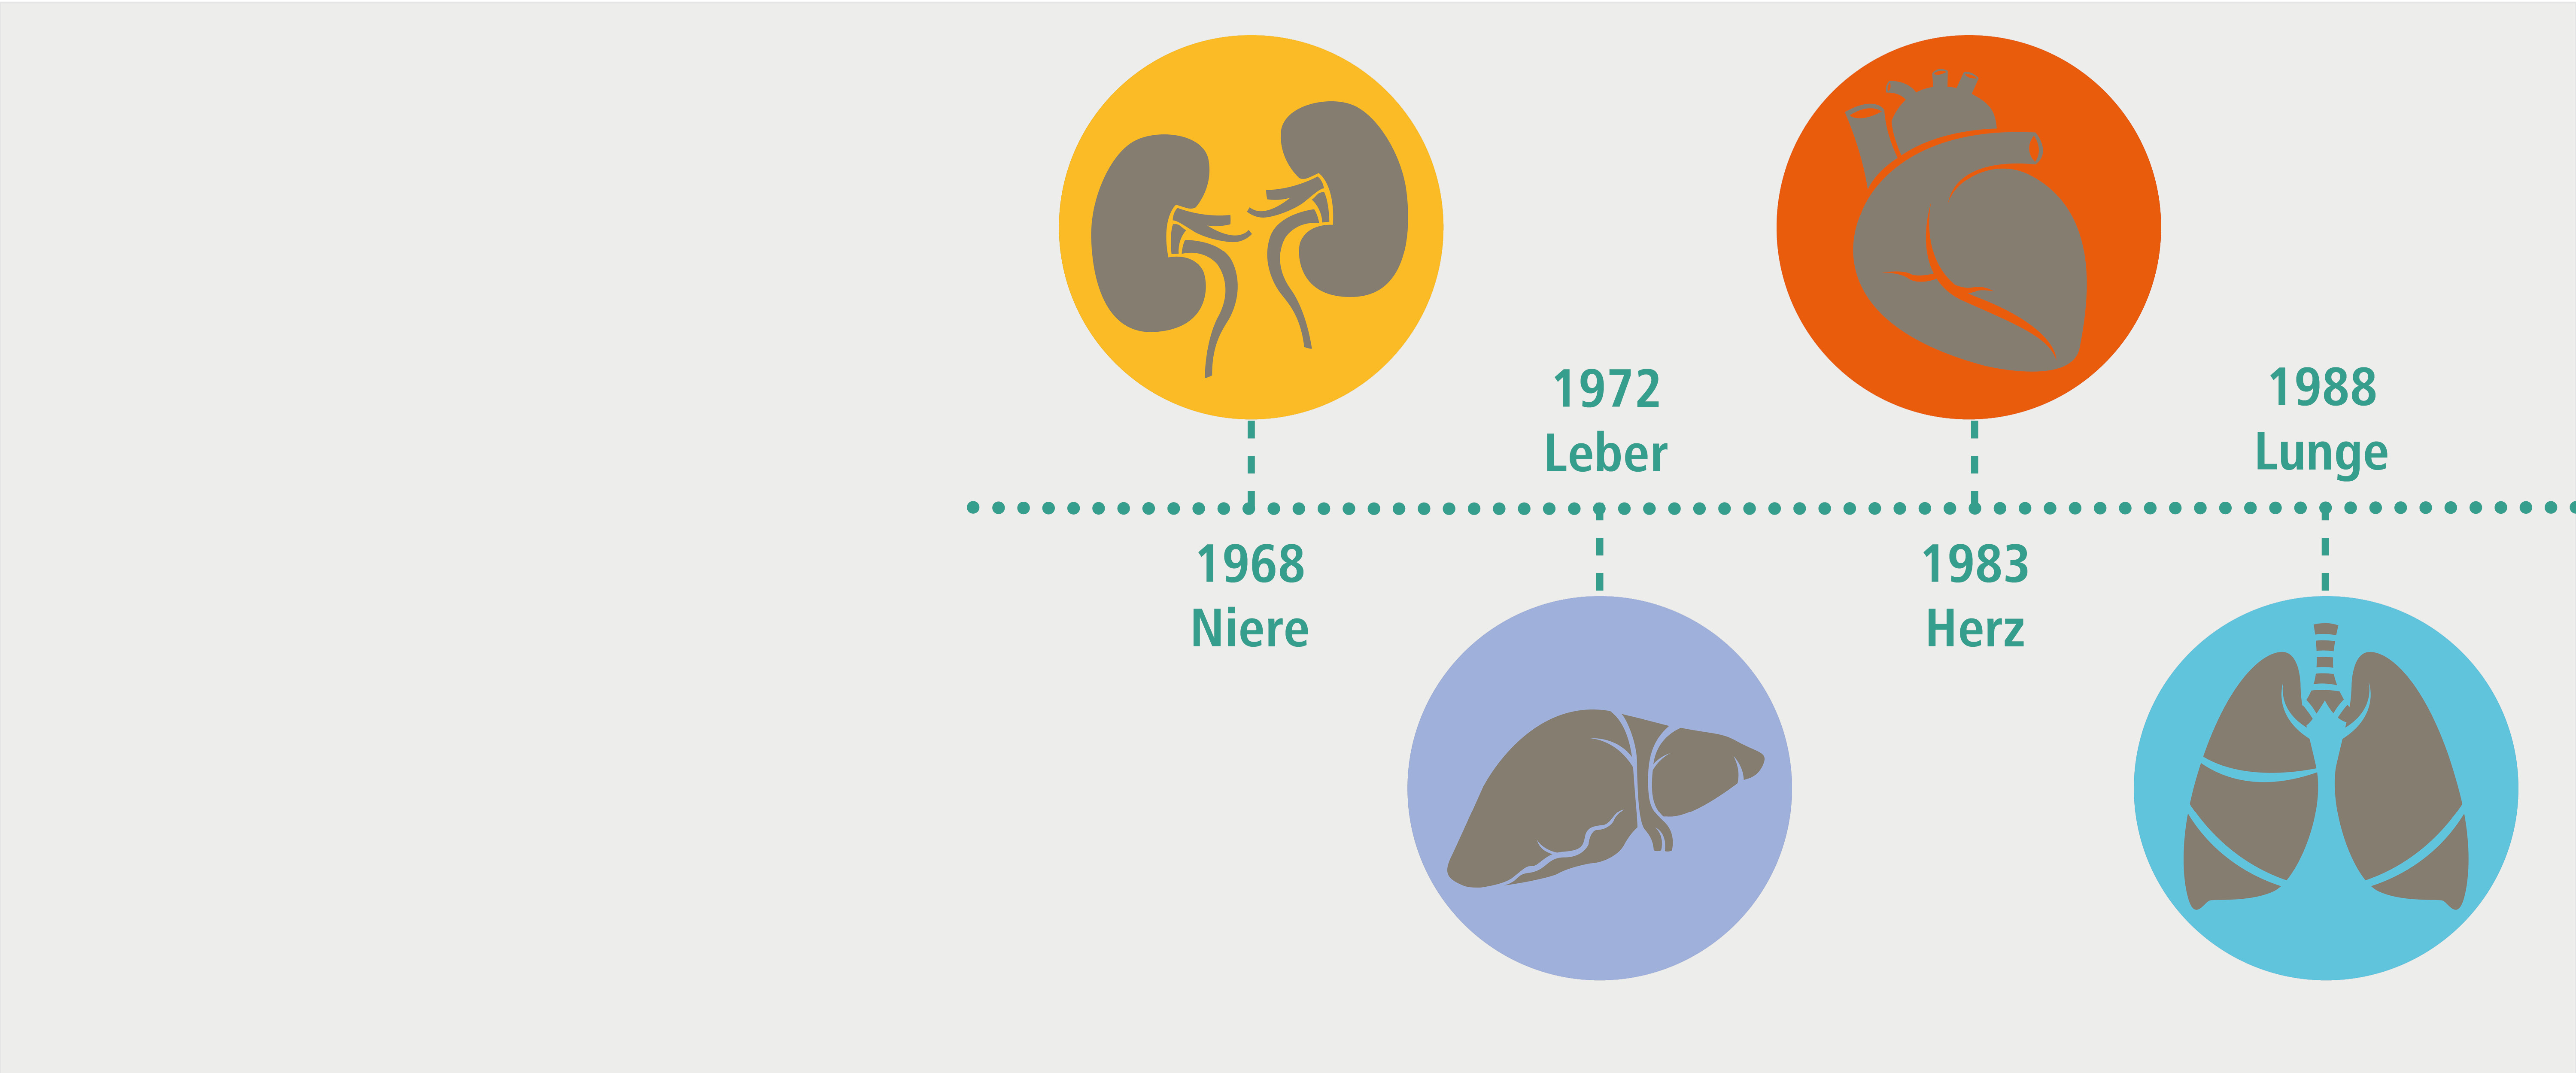 An der MHH wurde ie erste Niere 1968 transplantiert, die erste Leber 1972, das erste Herz 1983 und die erste Lunge 1988. Copyright: MHH/Transplantationszentrum